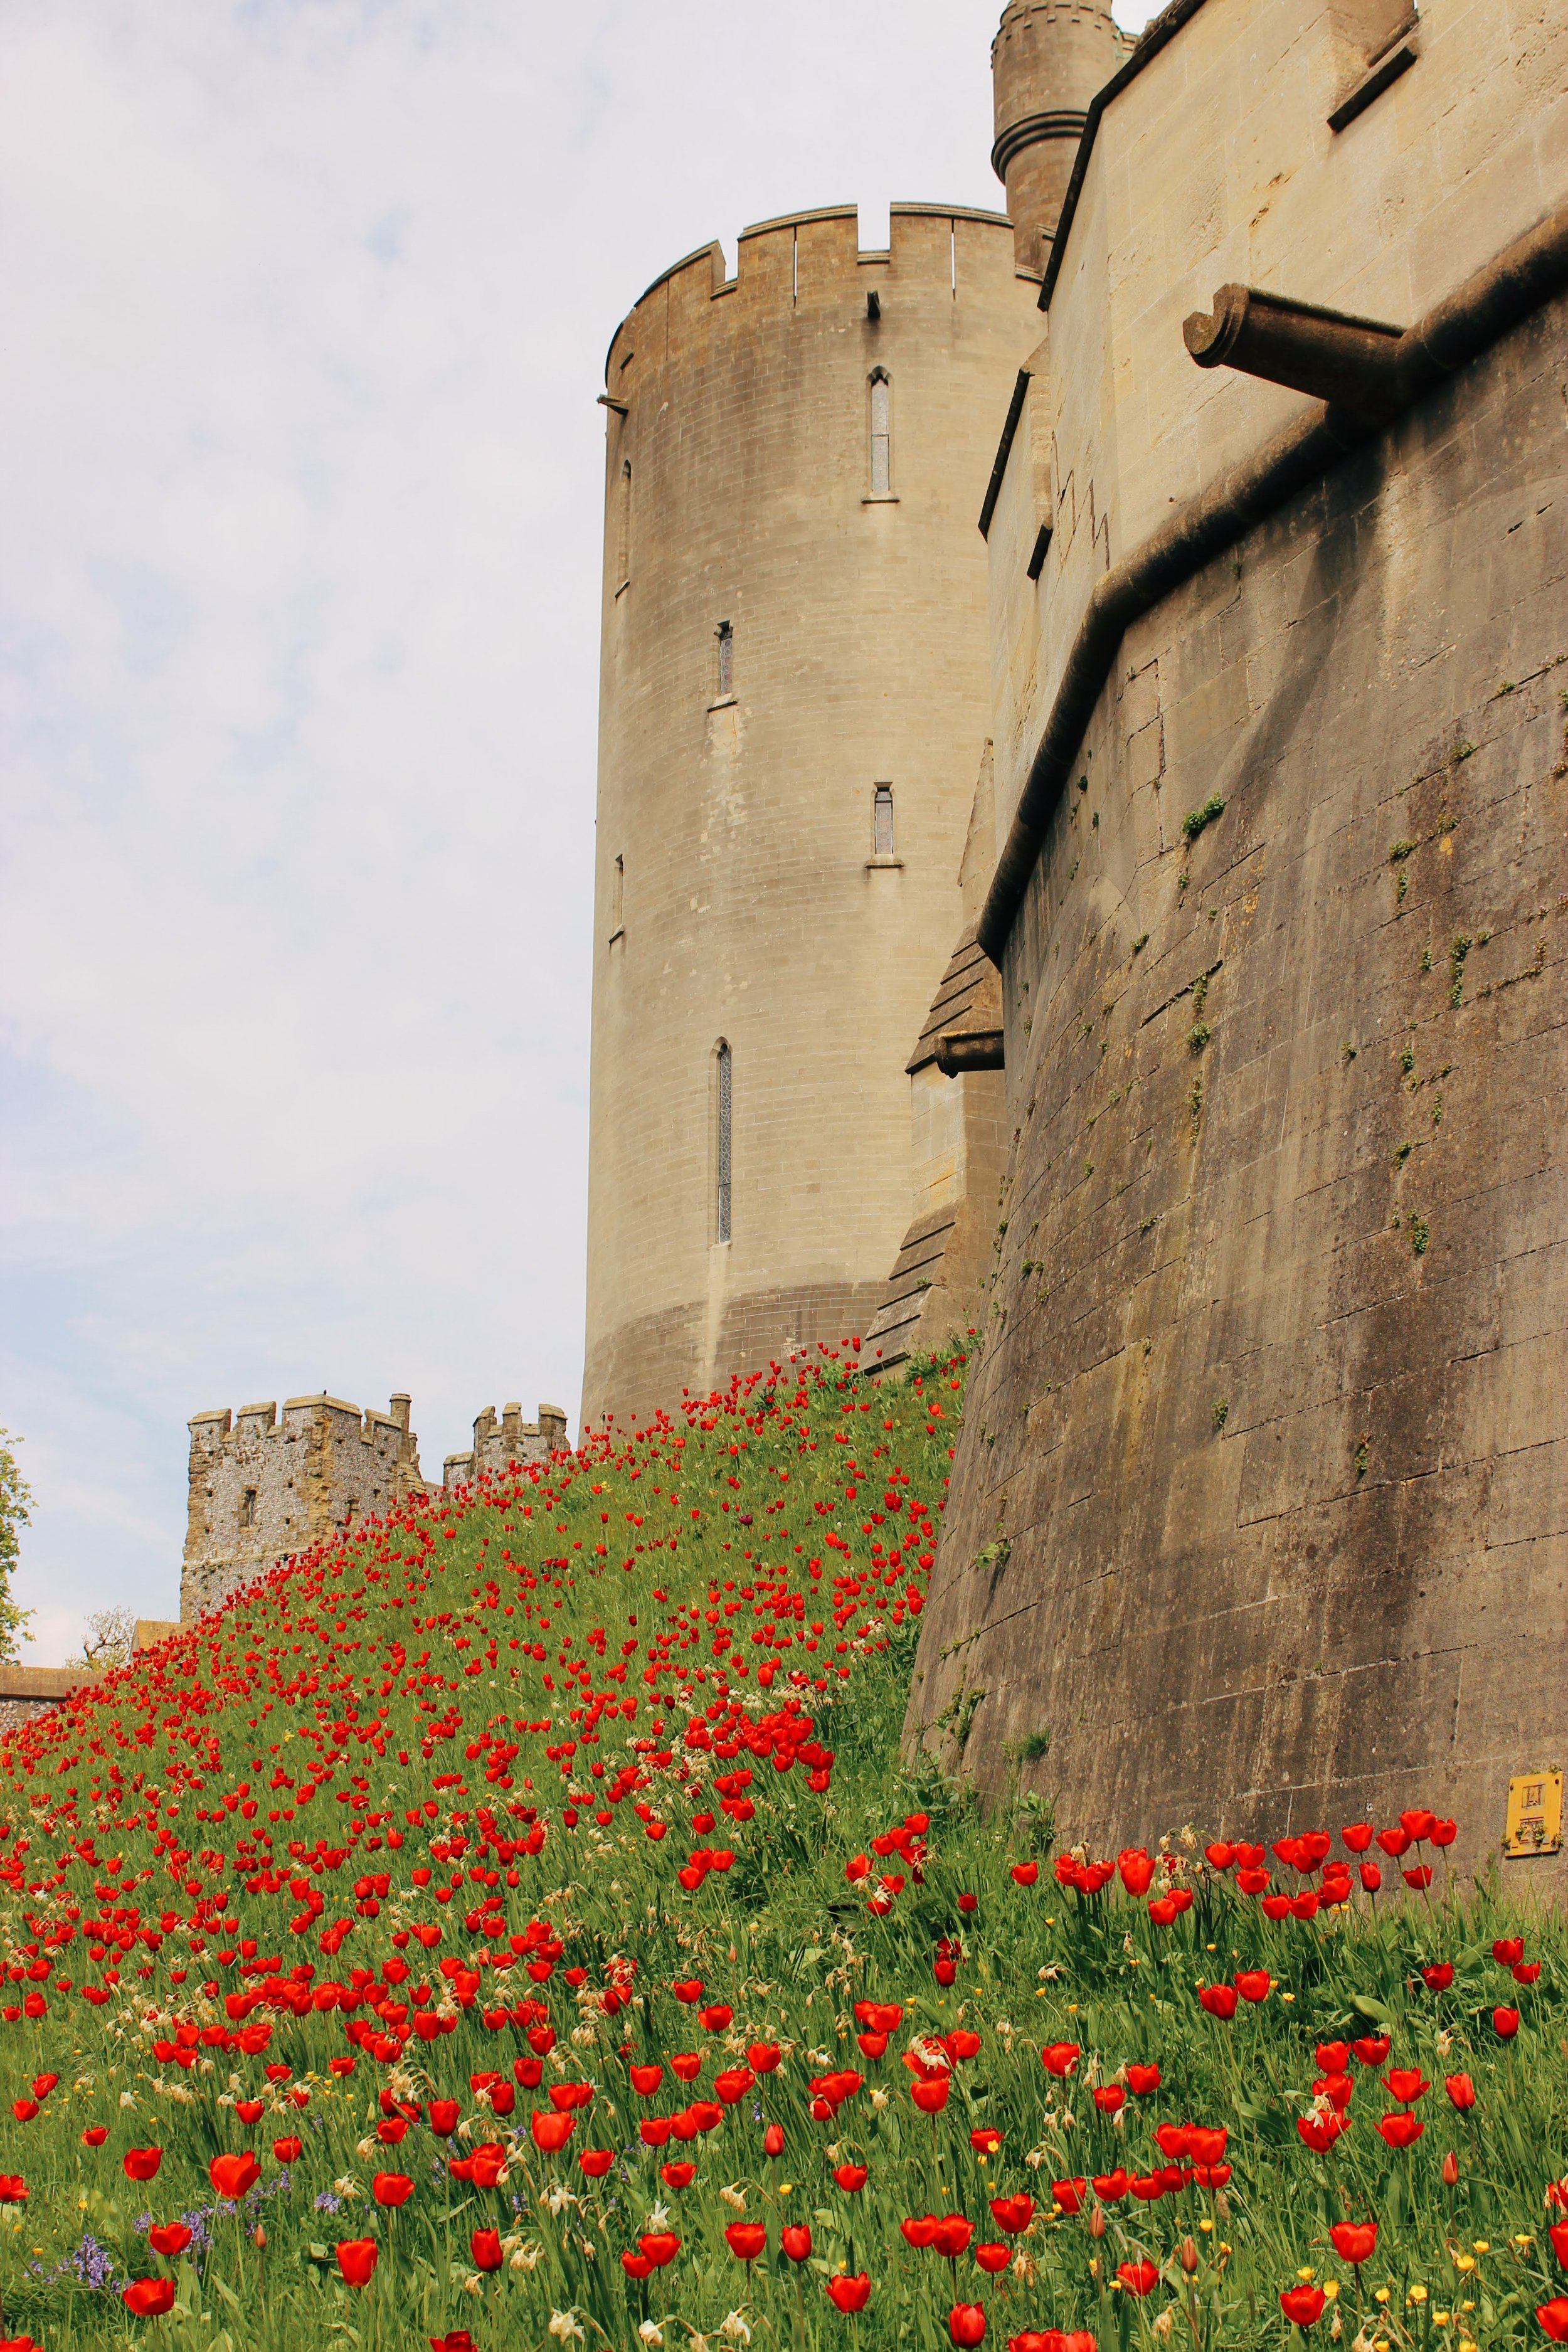 arundel castle garden tulips13.jpg